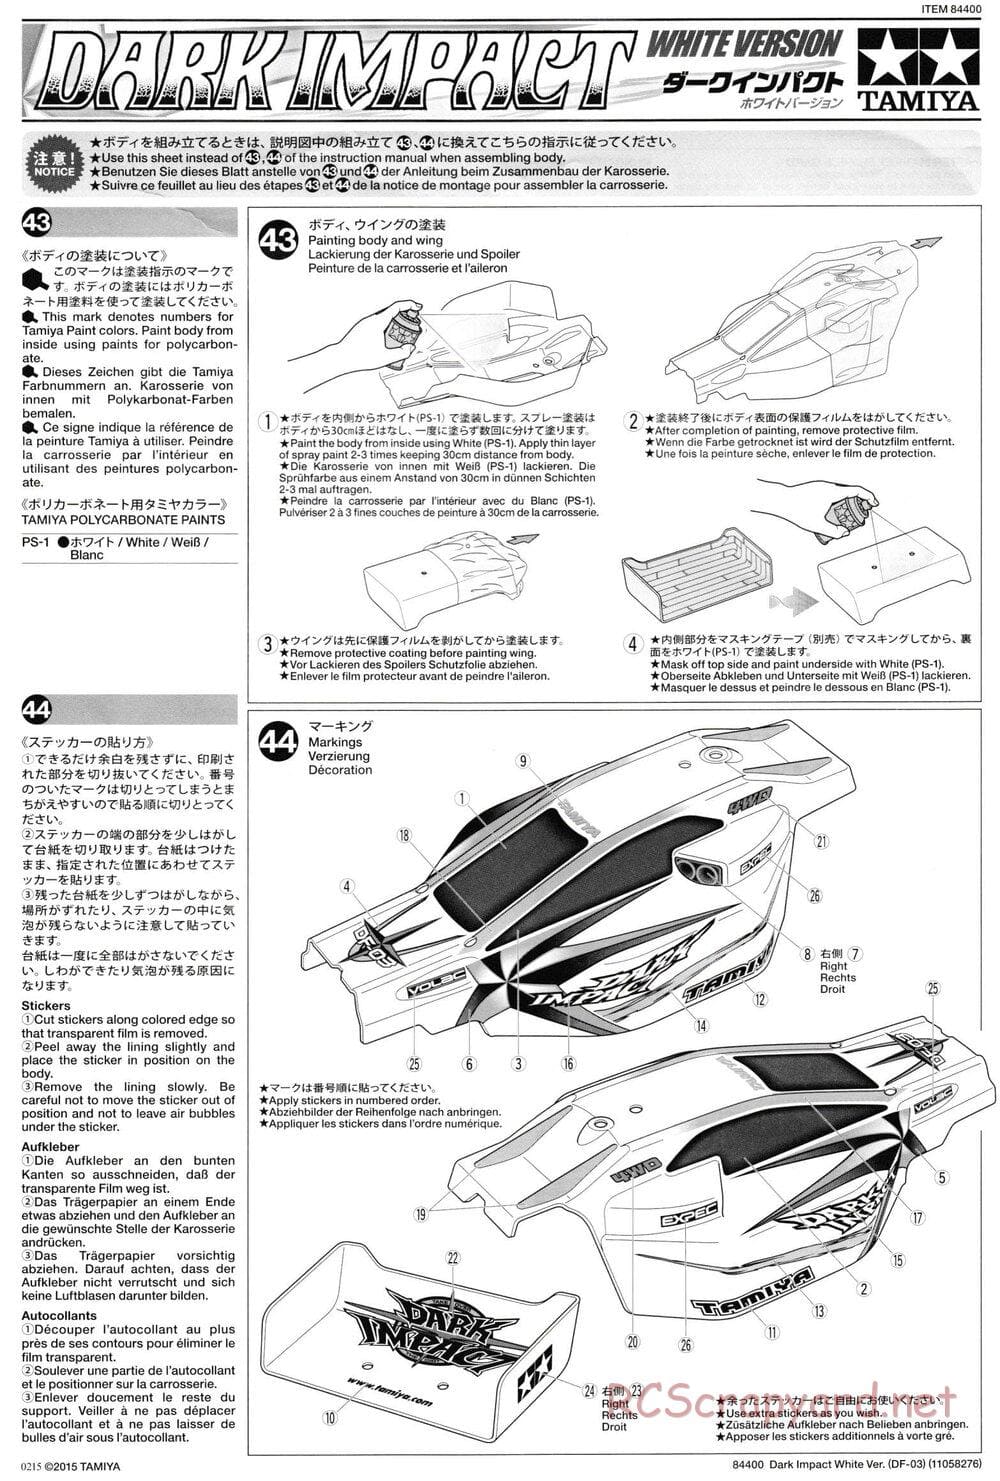 Tamiya - Dark Impact - White Version - DF-03 Chassis - Manual - Page 1